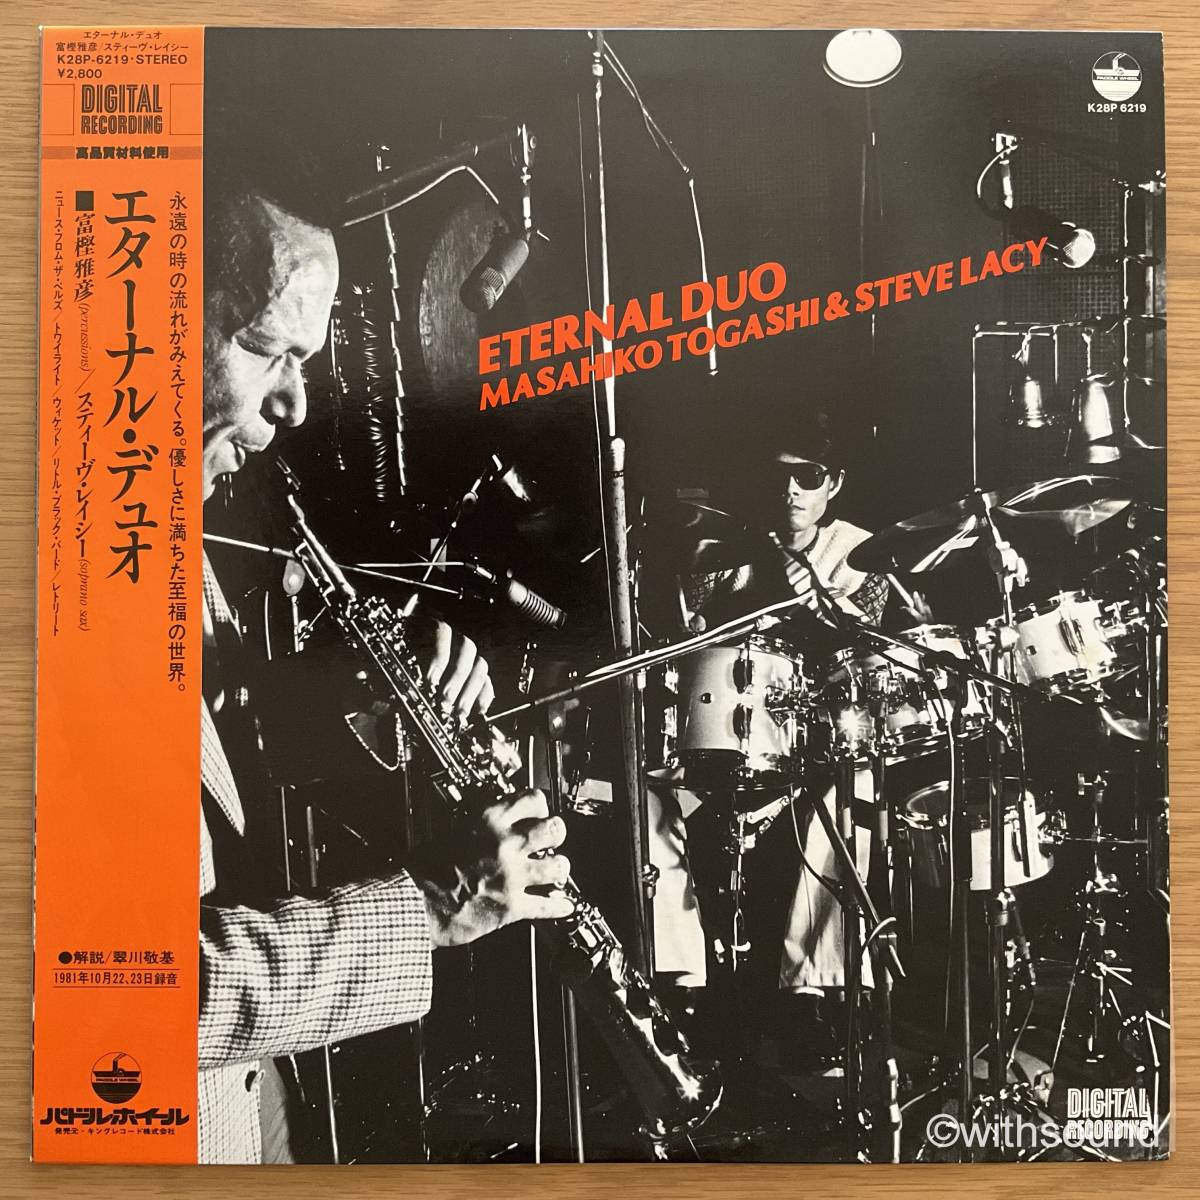 富樫雅彦 & STEVE LACY Eternal Duo 国内オリジナル盤 LP 帯付き 和ジャズ 1983 K28P 6219